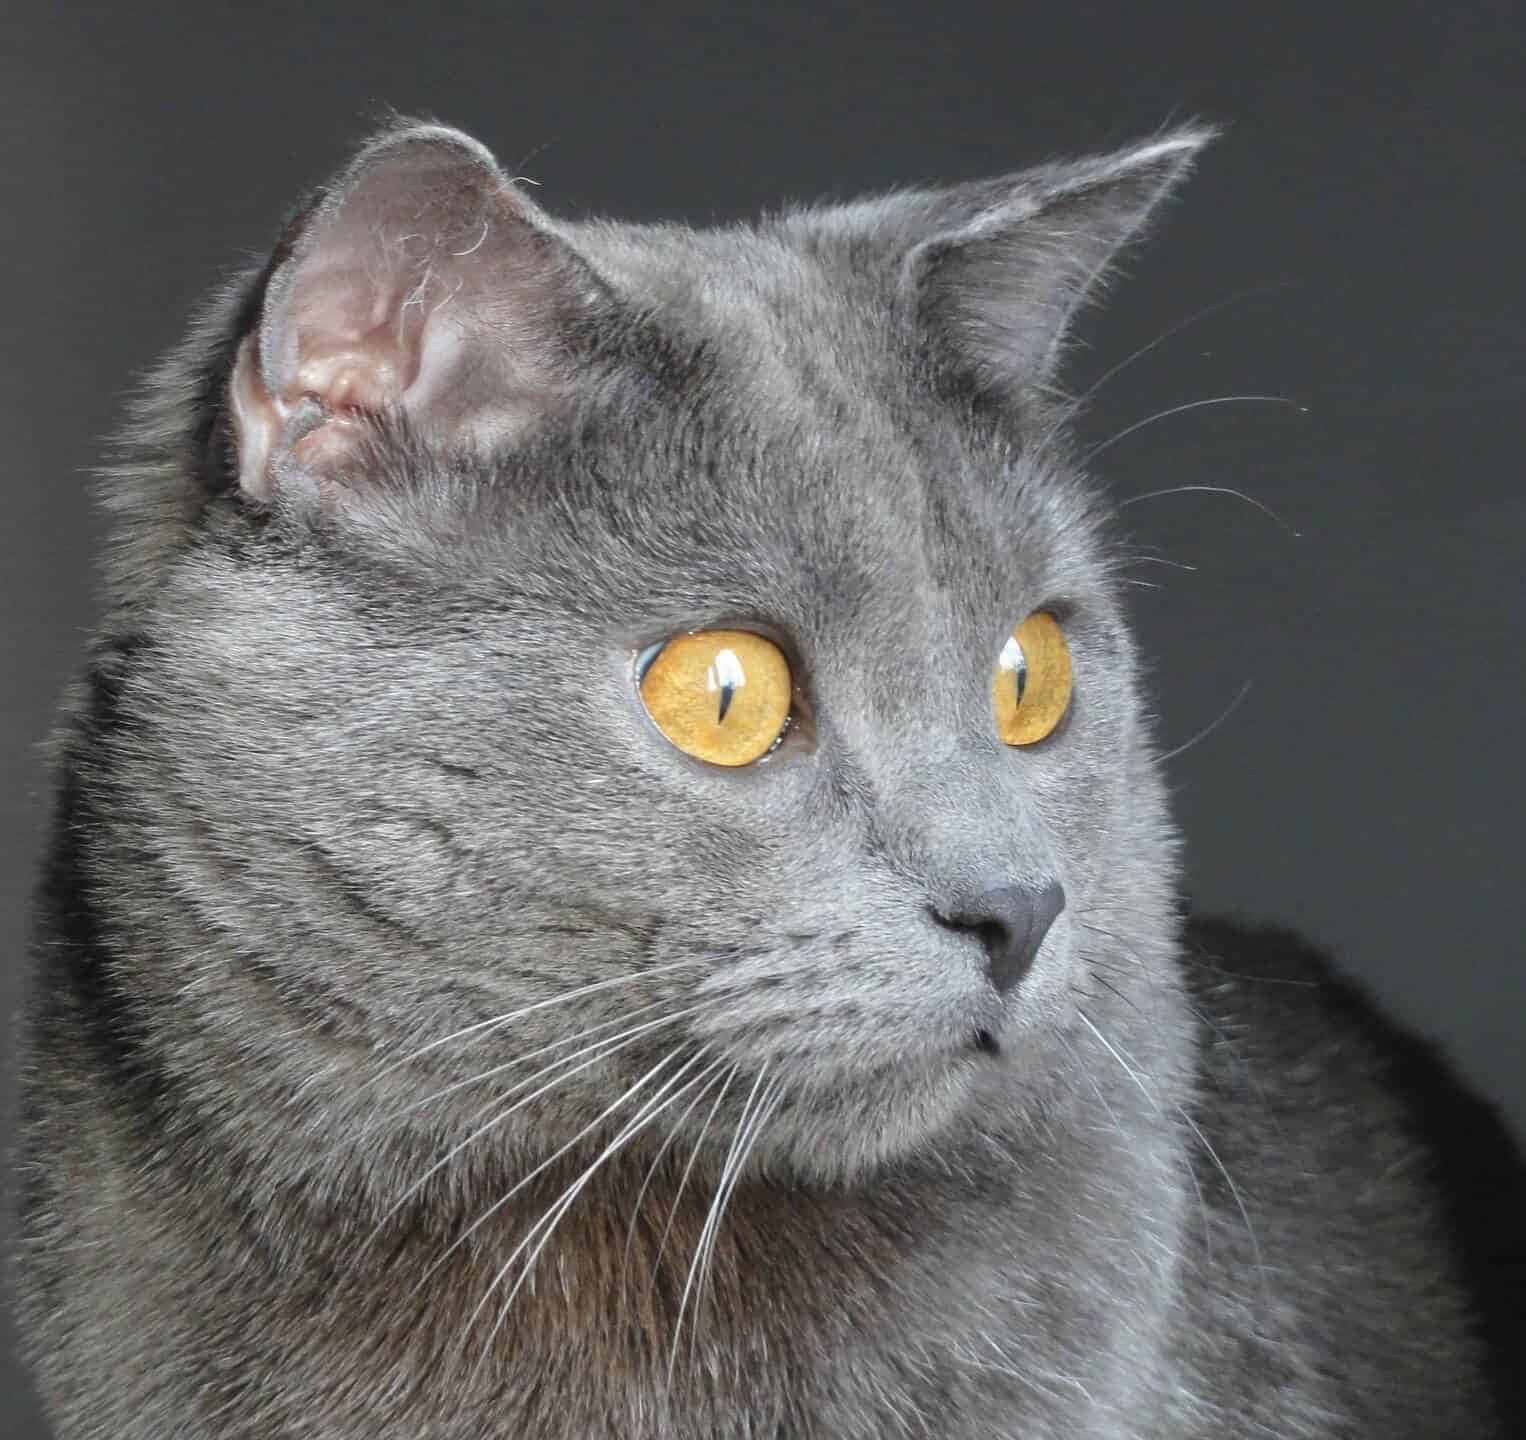 Imagende Un Gato Chartreux Gris Con Ojos Amarillos.